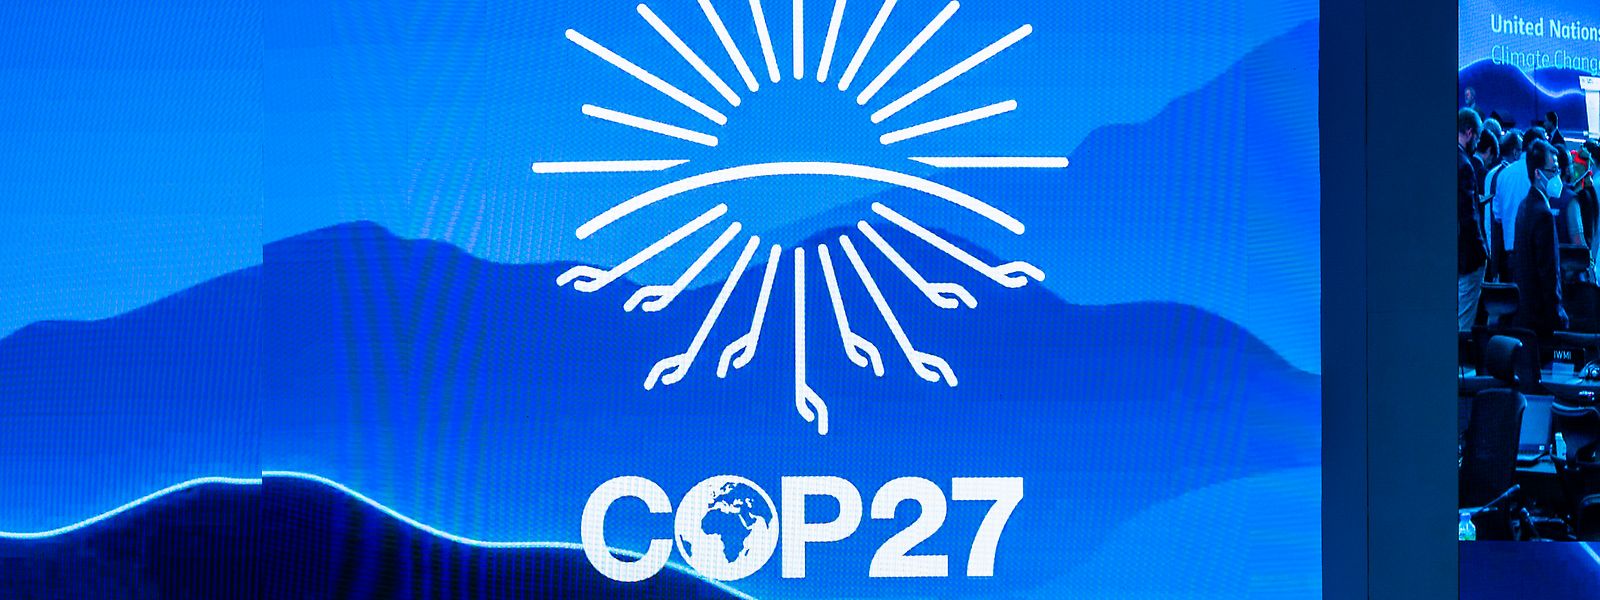 Die COP27 endete vergangene Woche. Die Reaktionen auf die Klimakonferenz fielen verhalten aus.